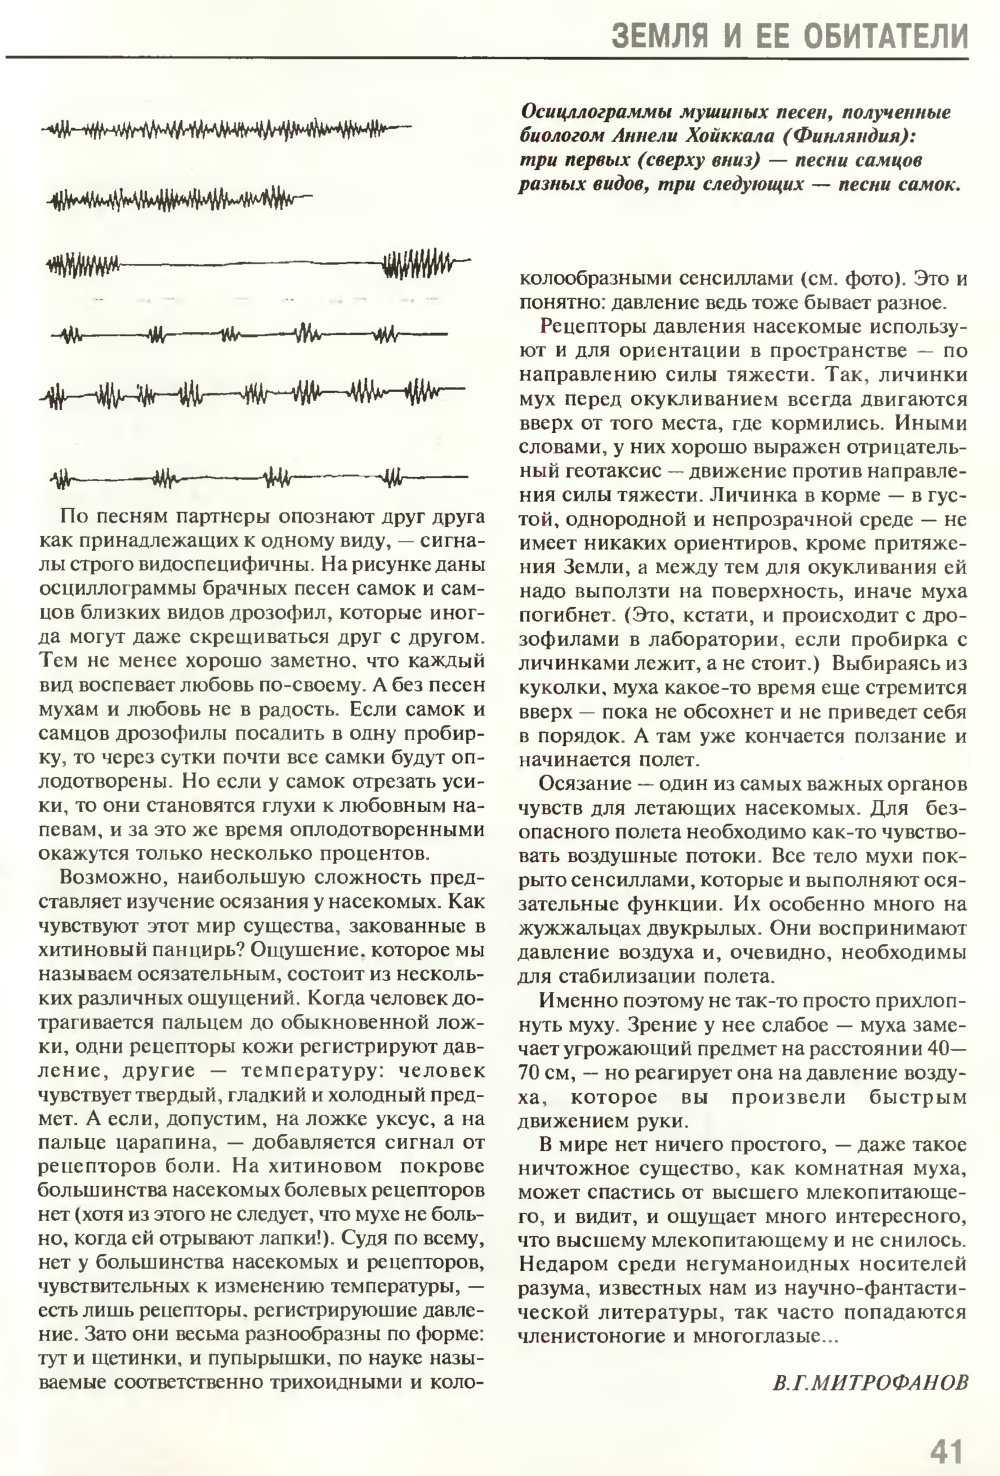 Взгляд на мир шестиугольными глазами. В.Г. Митрофанов. Химия и жизнь, 1995, №5, с.36-41. Фотокопия №6